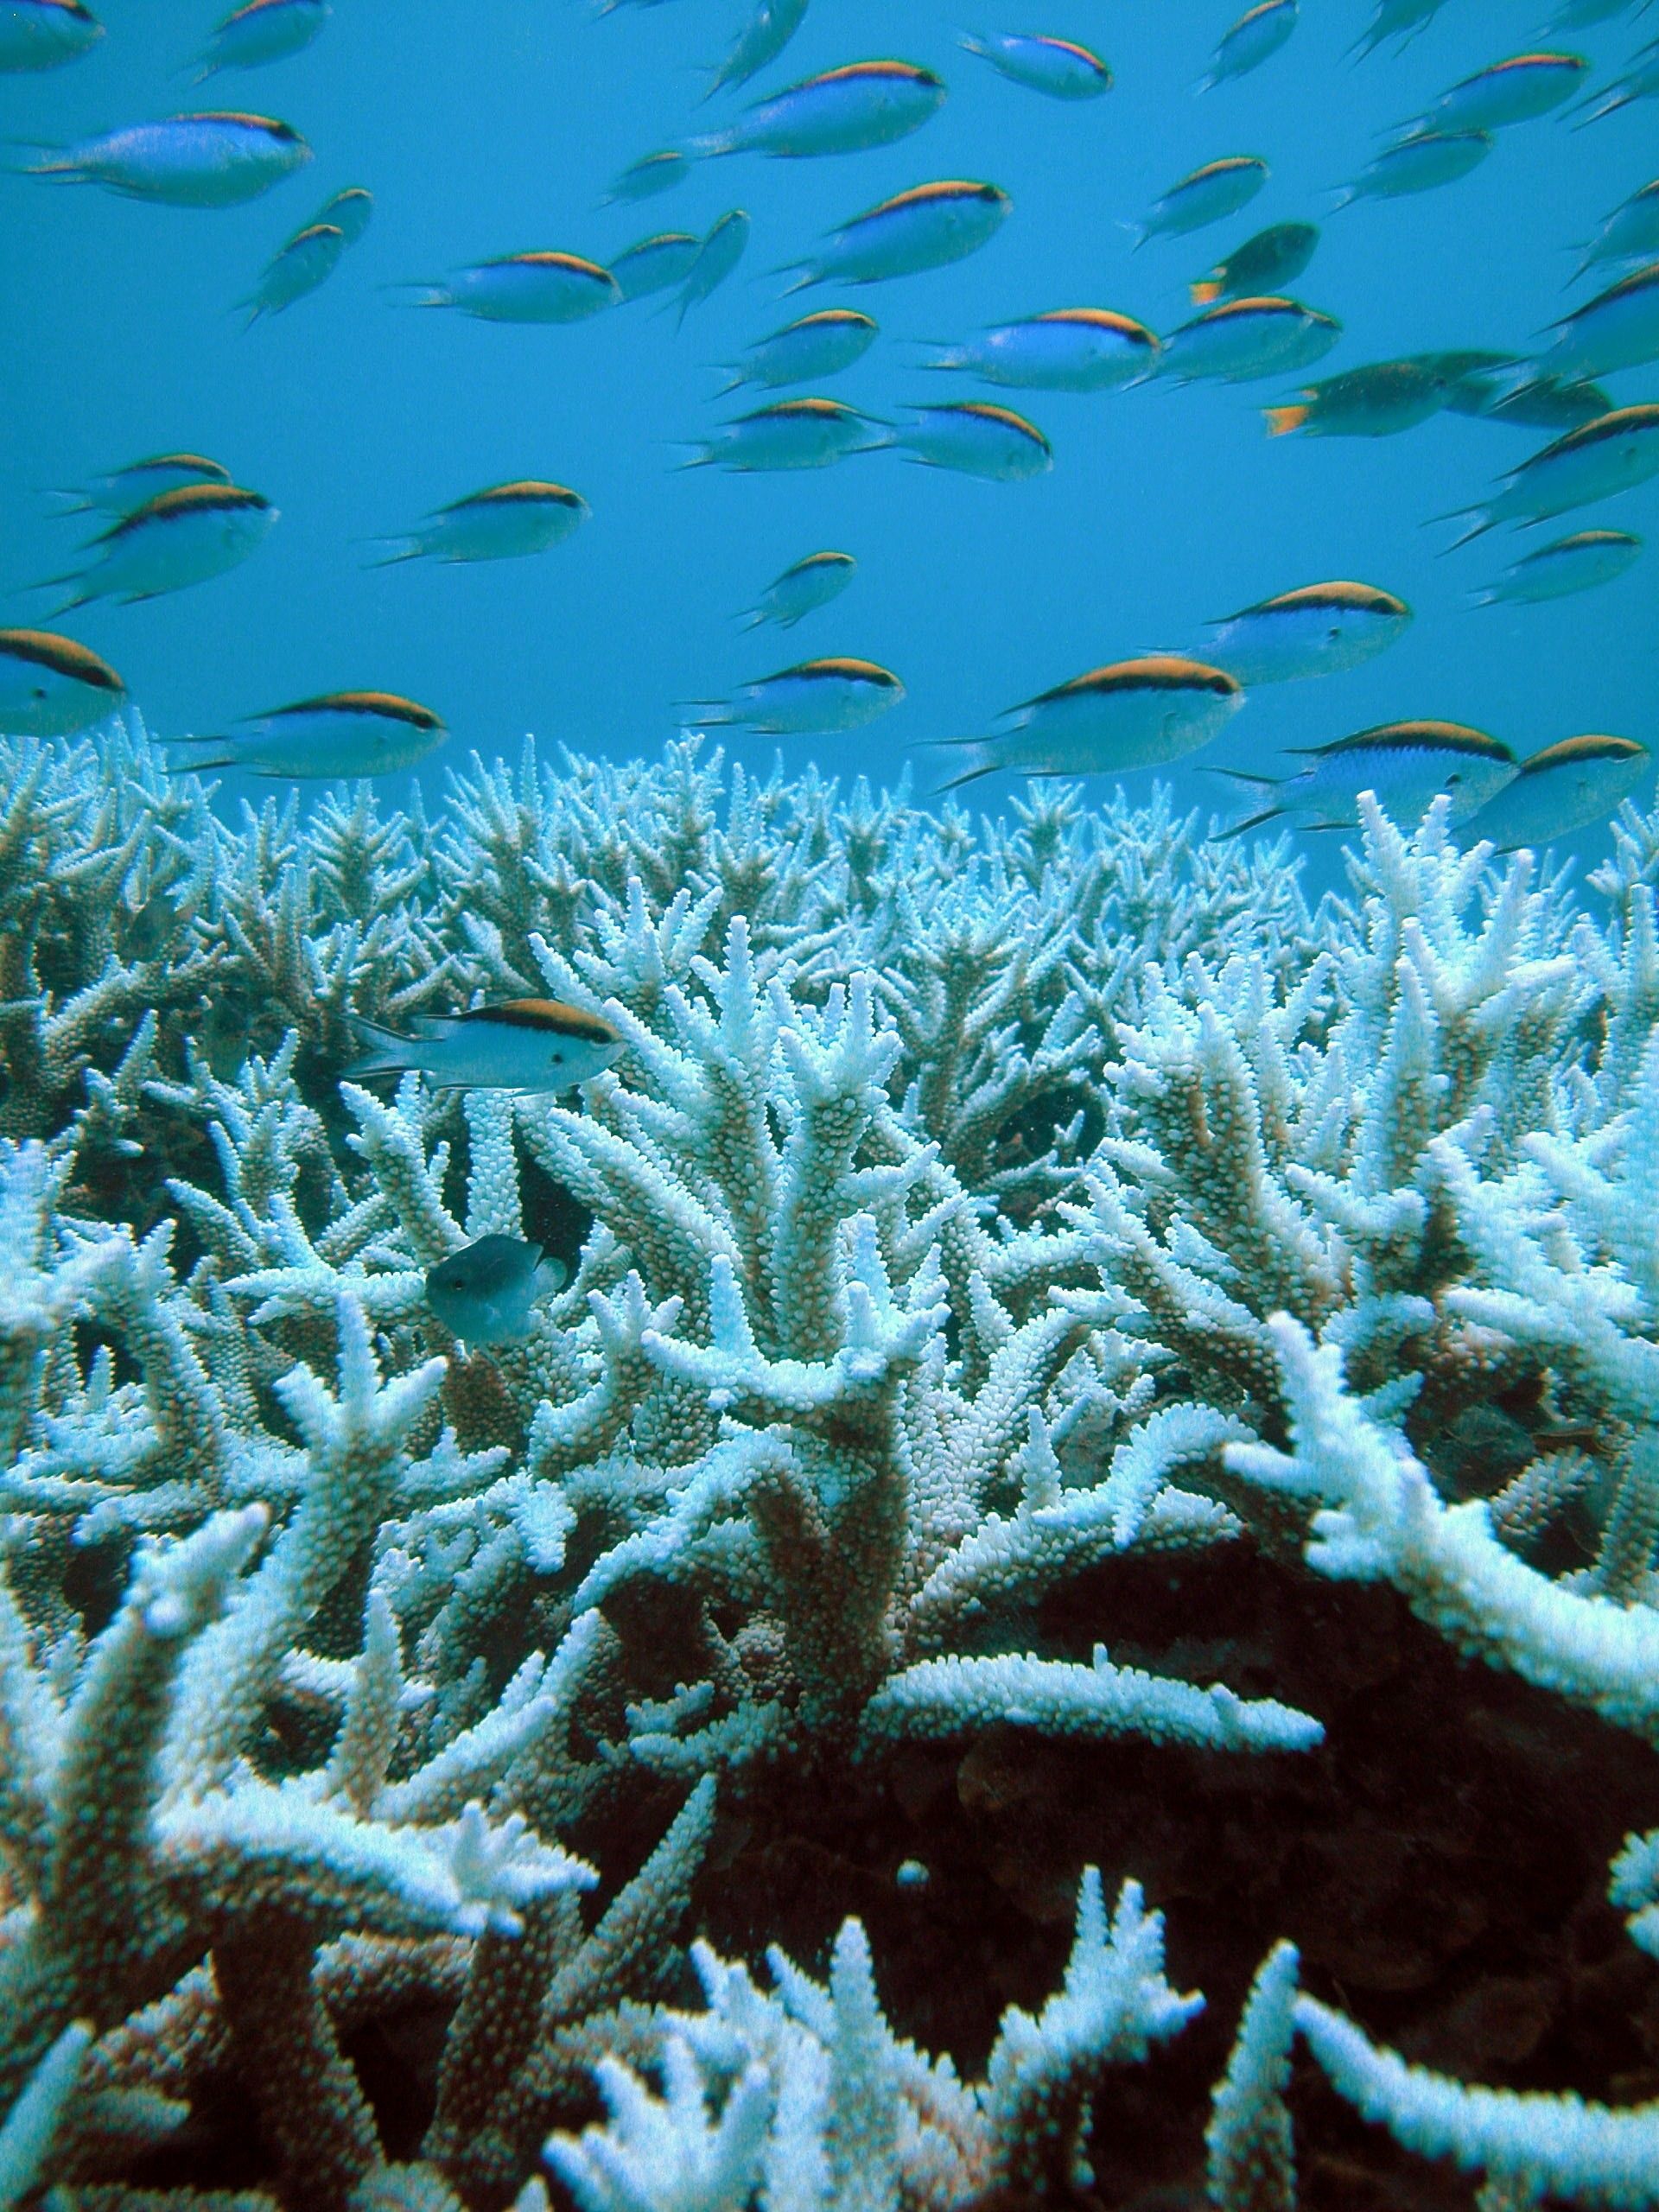 Los arrecifes de coral son uno de los ecosistemas marinos más amenazados / Foto: Hoegh-Guldberg